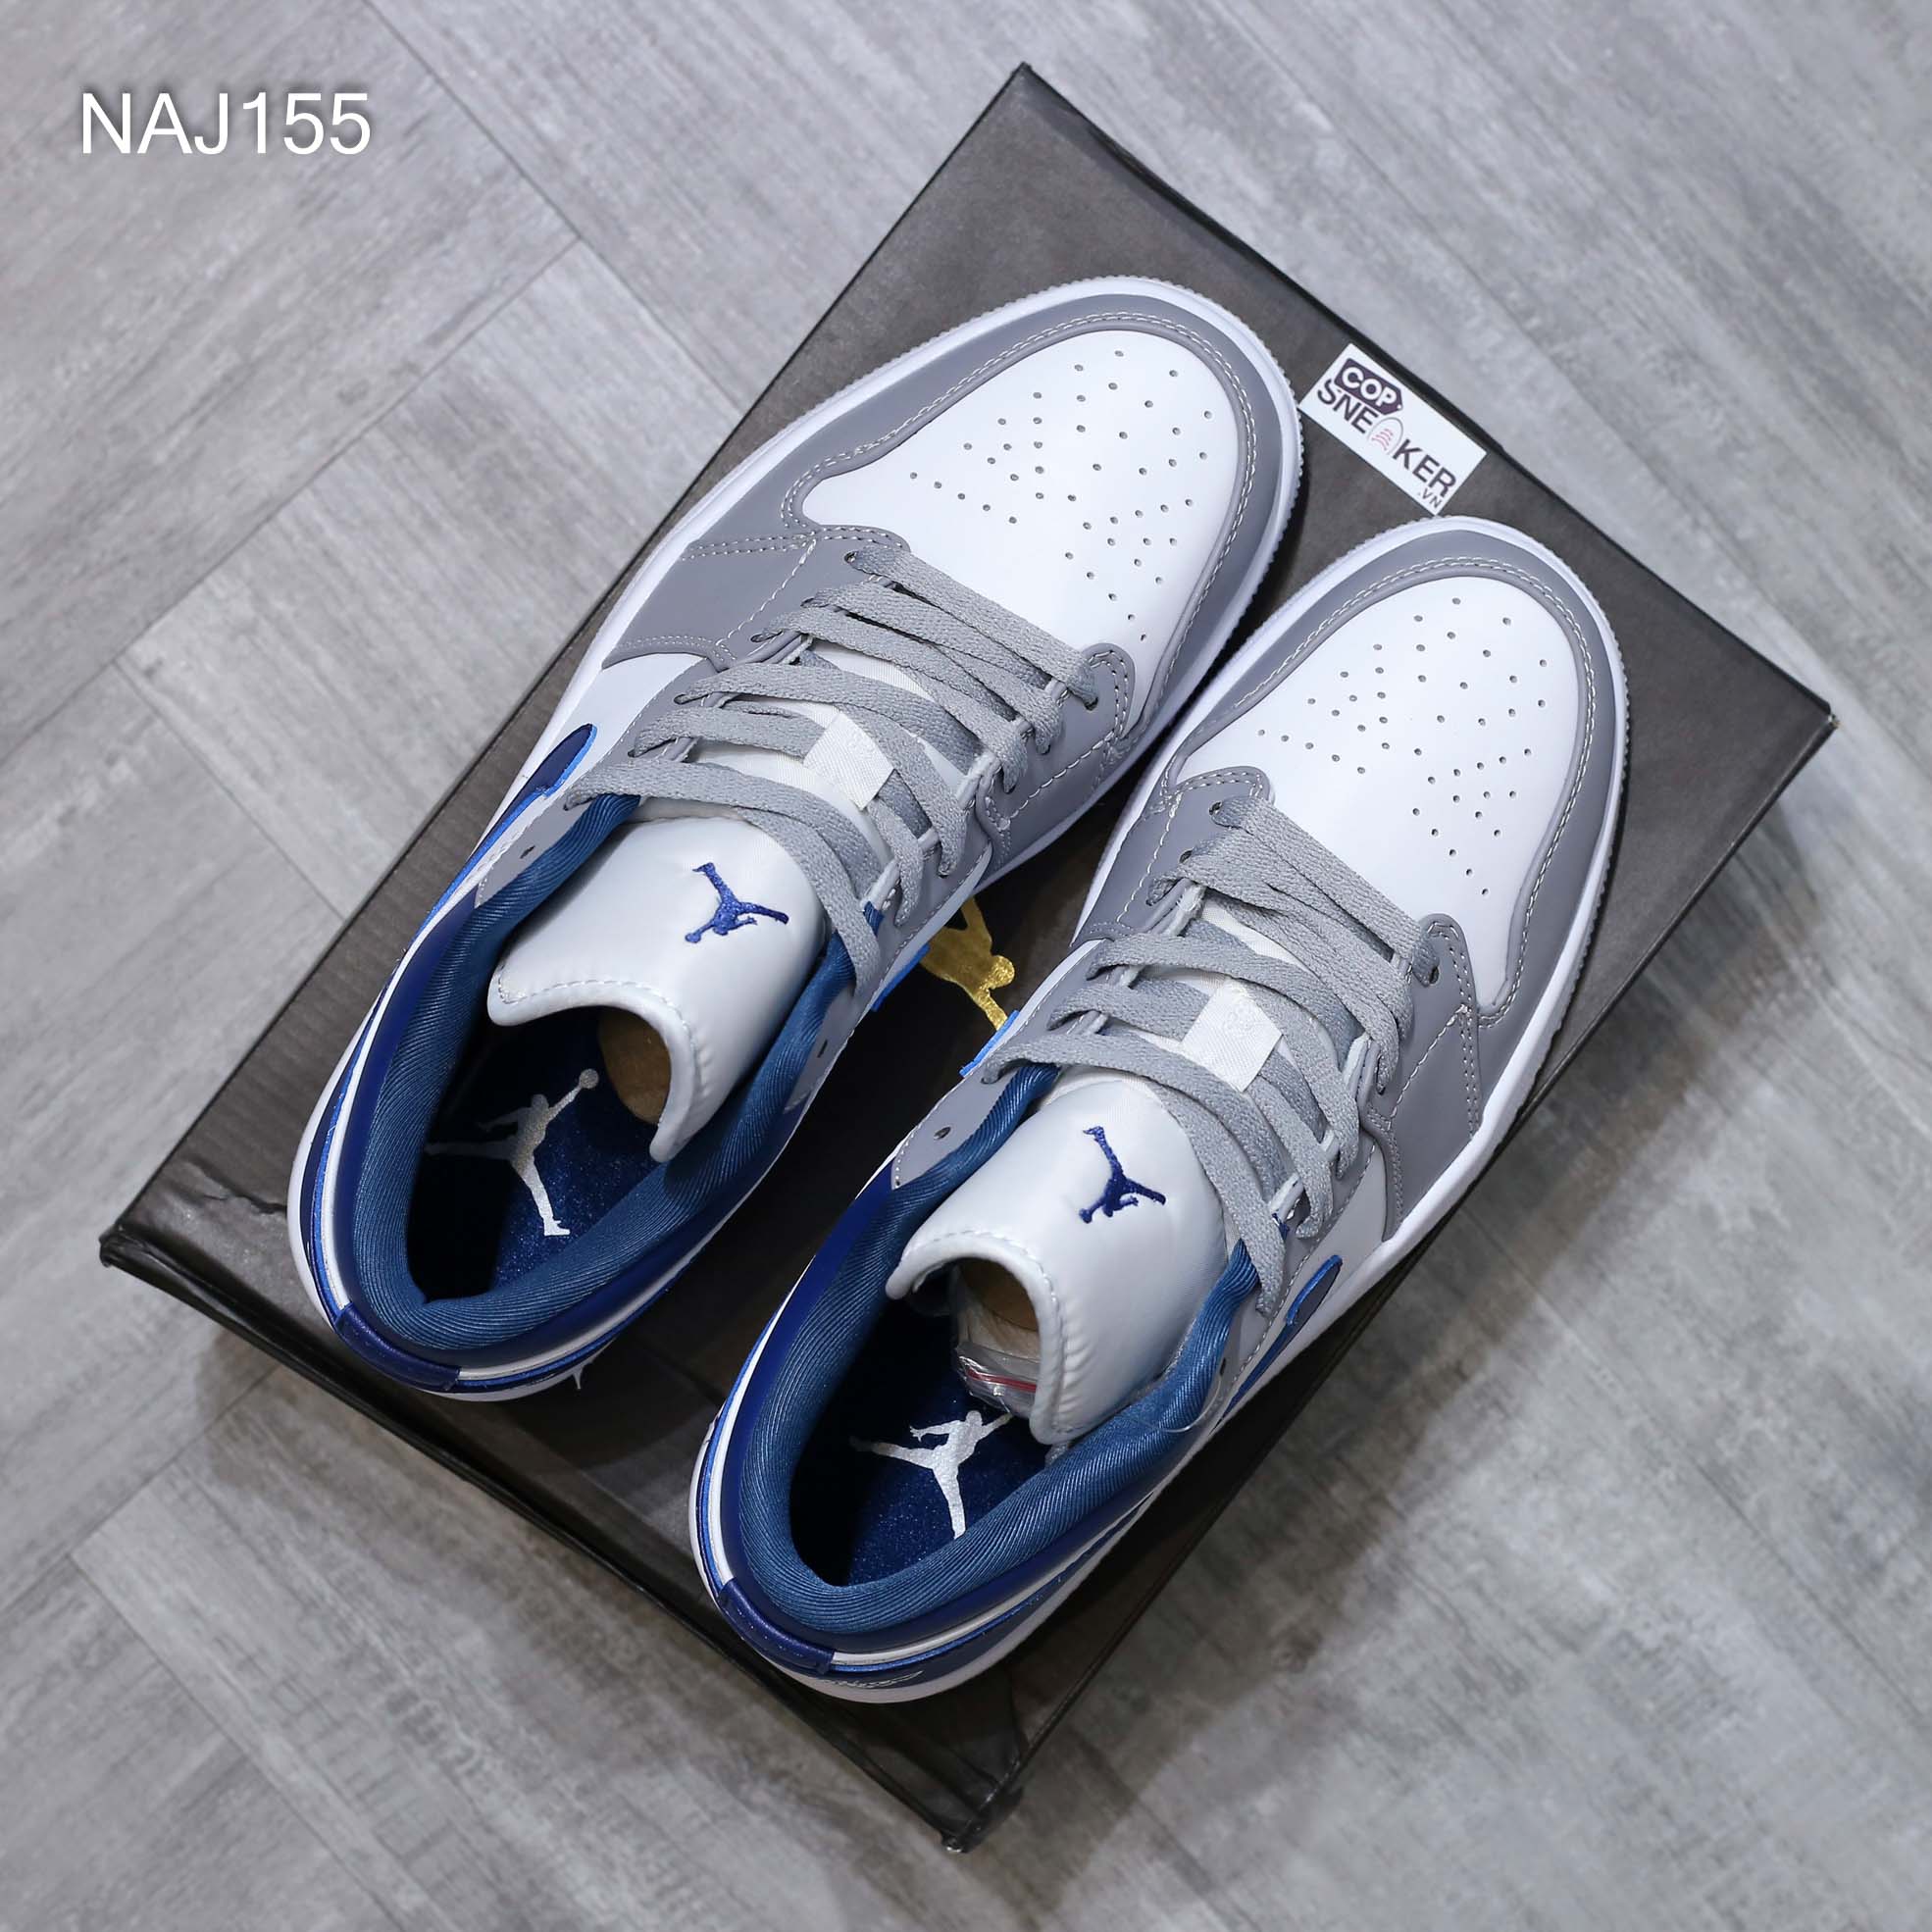 Giày Nike Air Jordan 1 Low ‘French Blue’ Xanh Xám Rep 1:1